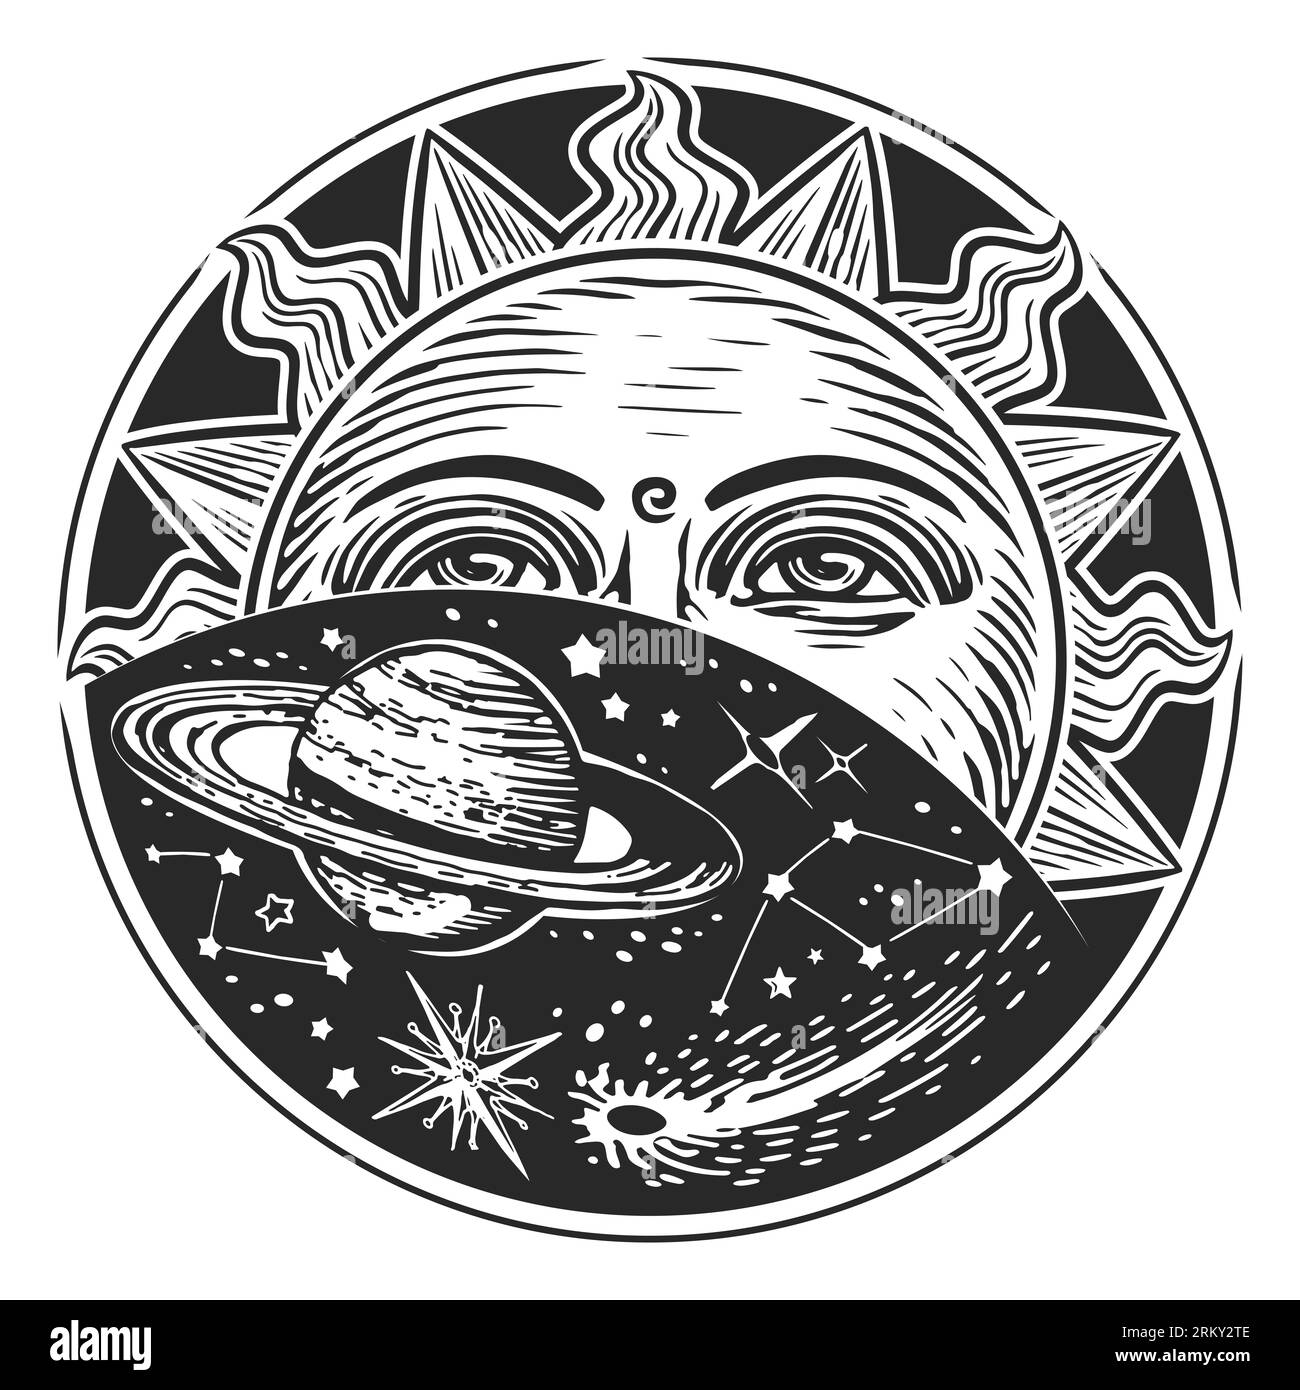 Exploration spatiale, concept d'astronomie. Soleil, étoiles et planètes. Style de gravure d'illustration vintage Banque D'Images